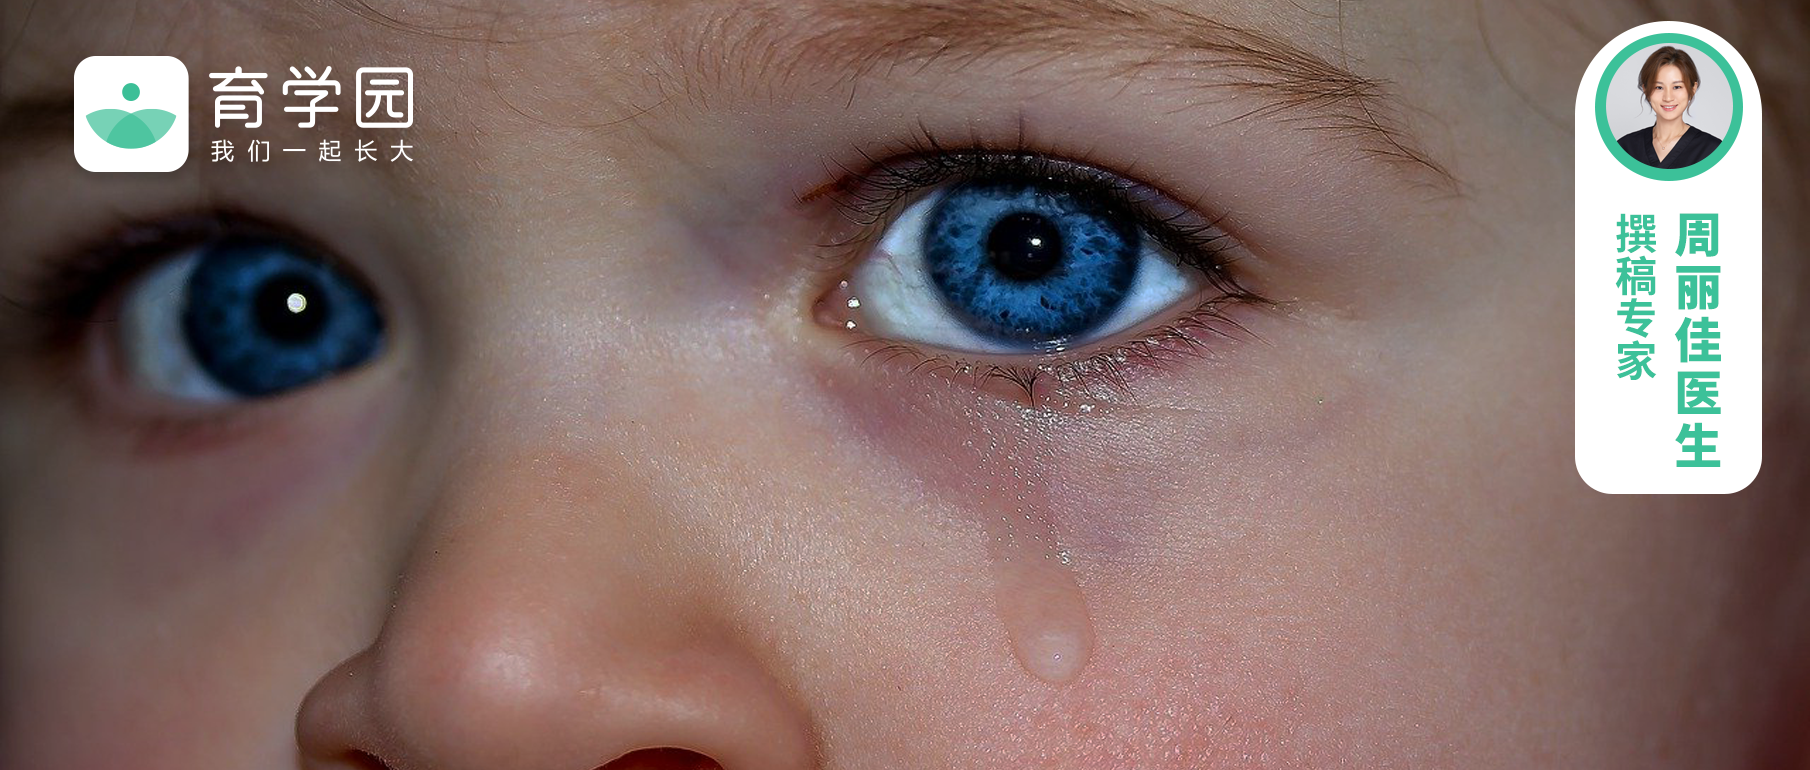 快看看孩子的眼睛！眯眼、流泪、疼痛，很可能隐藏着不可逆的危害